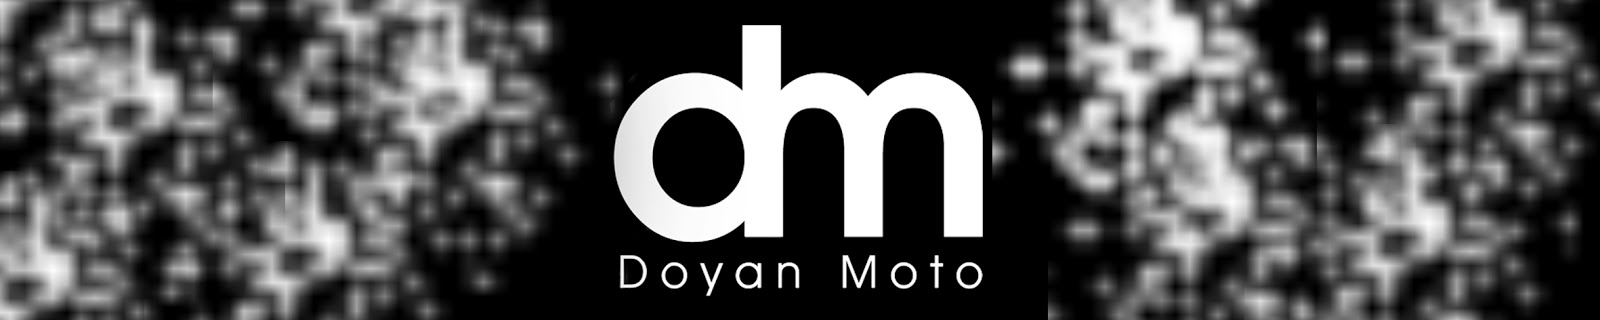 Doyan Moto